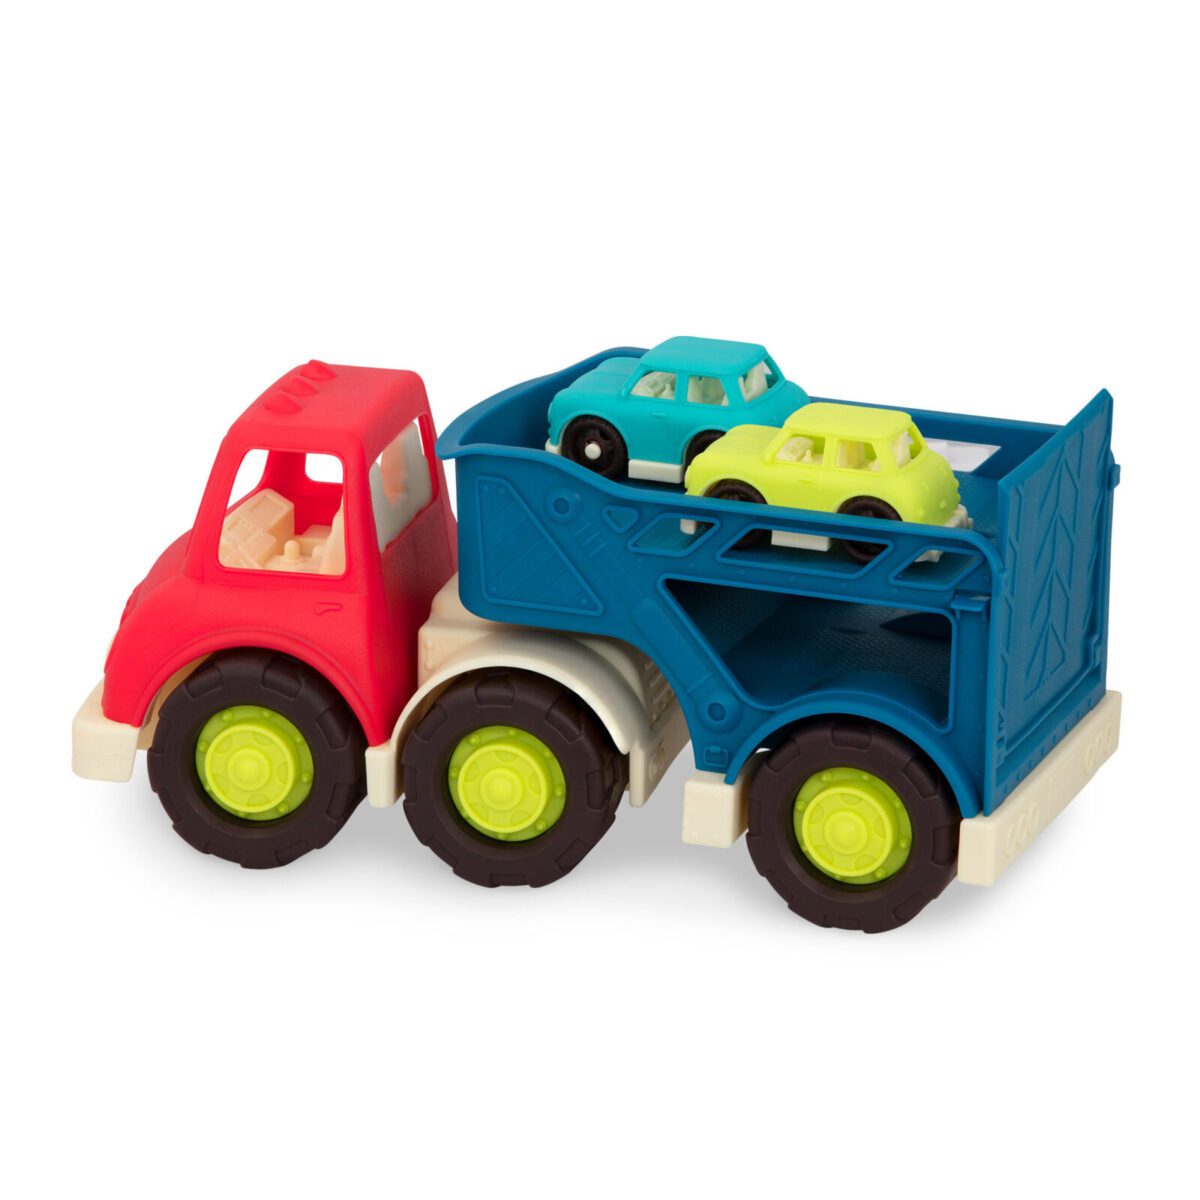 Comprar Vehículo Niñera De Juguete con Carritos marca B. Toys en Colombia